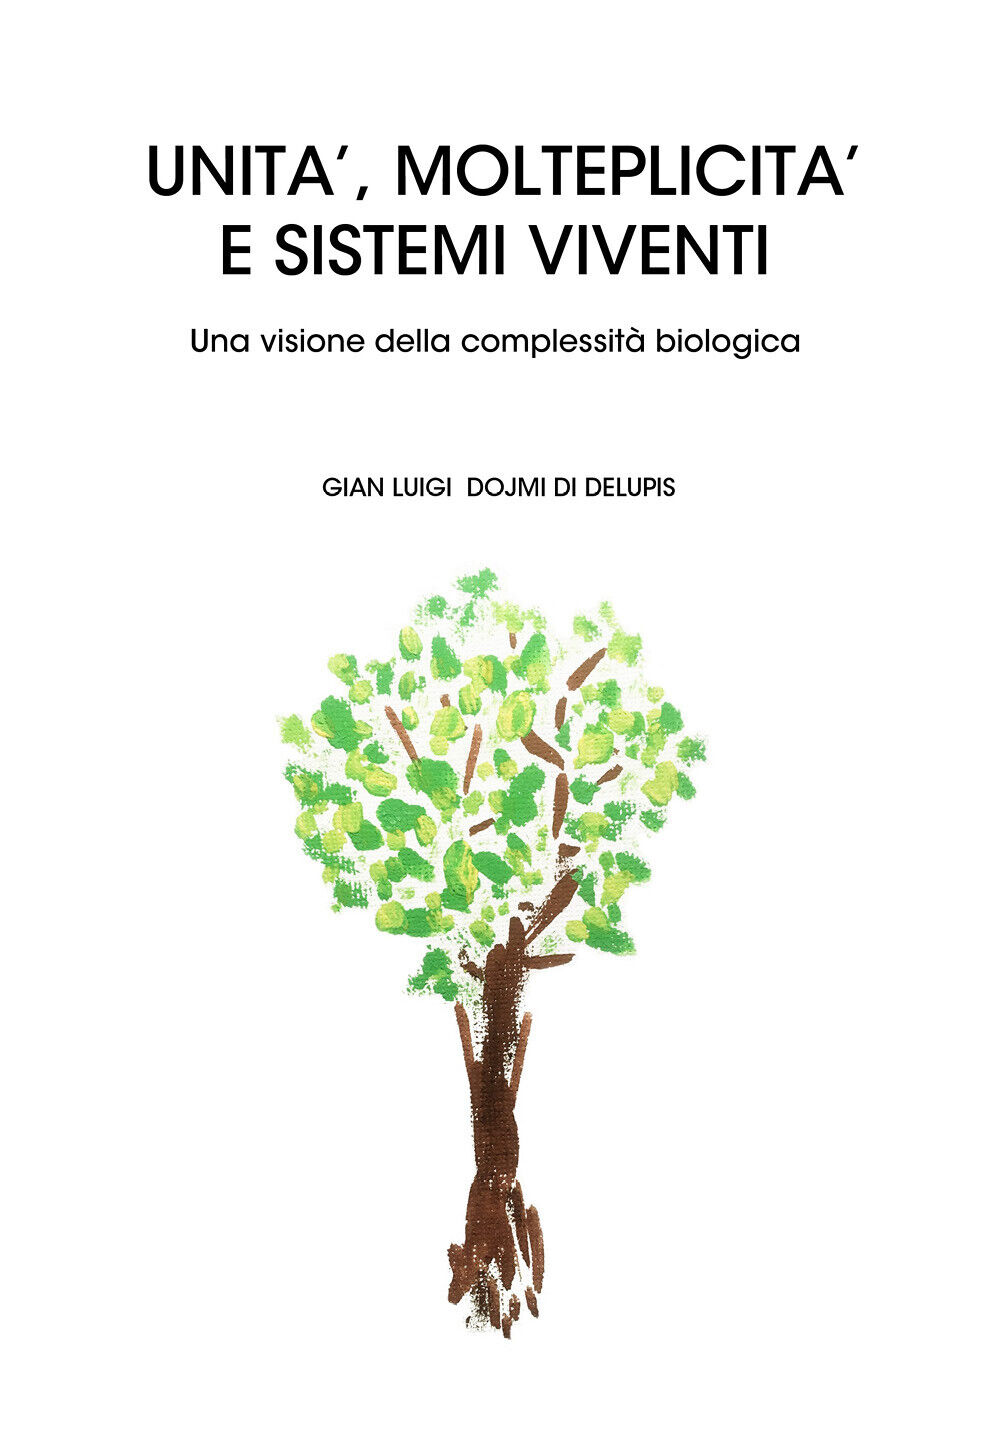 Unit?, molteplicit? e sistemi viventi - Gian Luigi Dojmi Di Delupis,  2019,  You